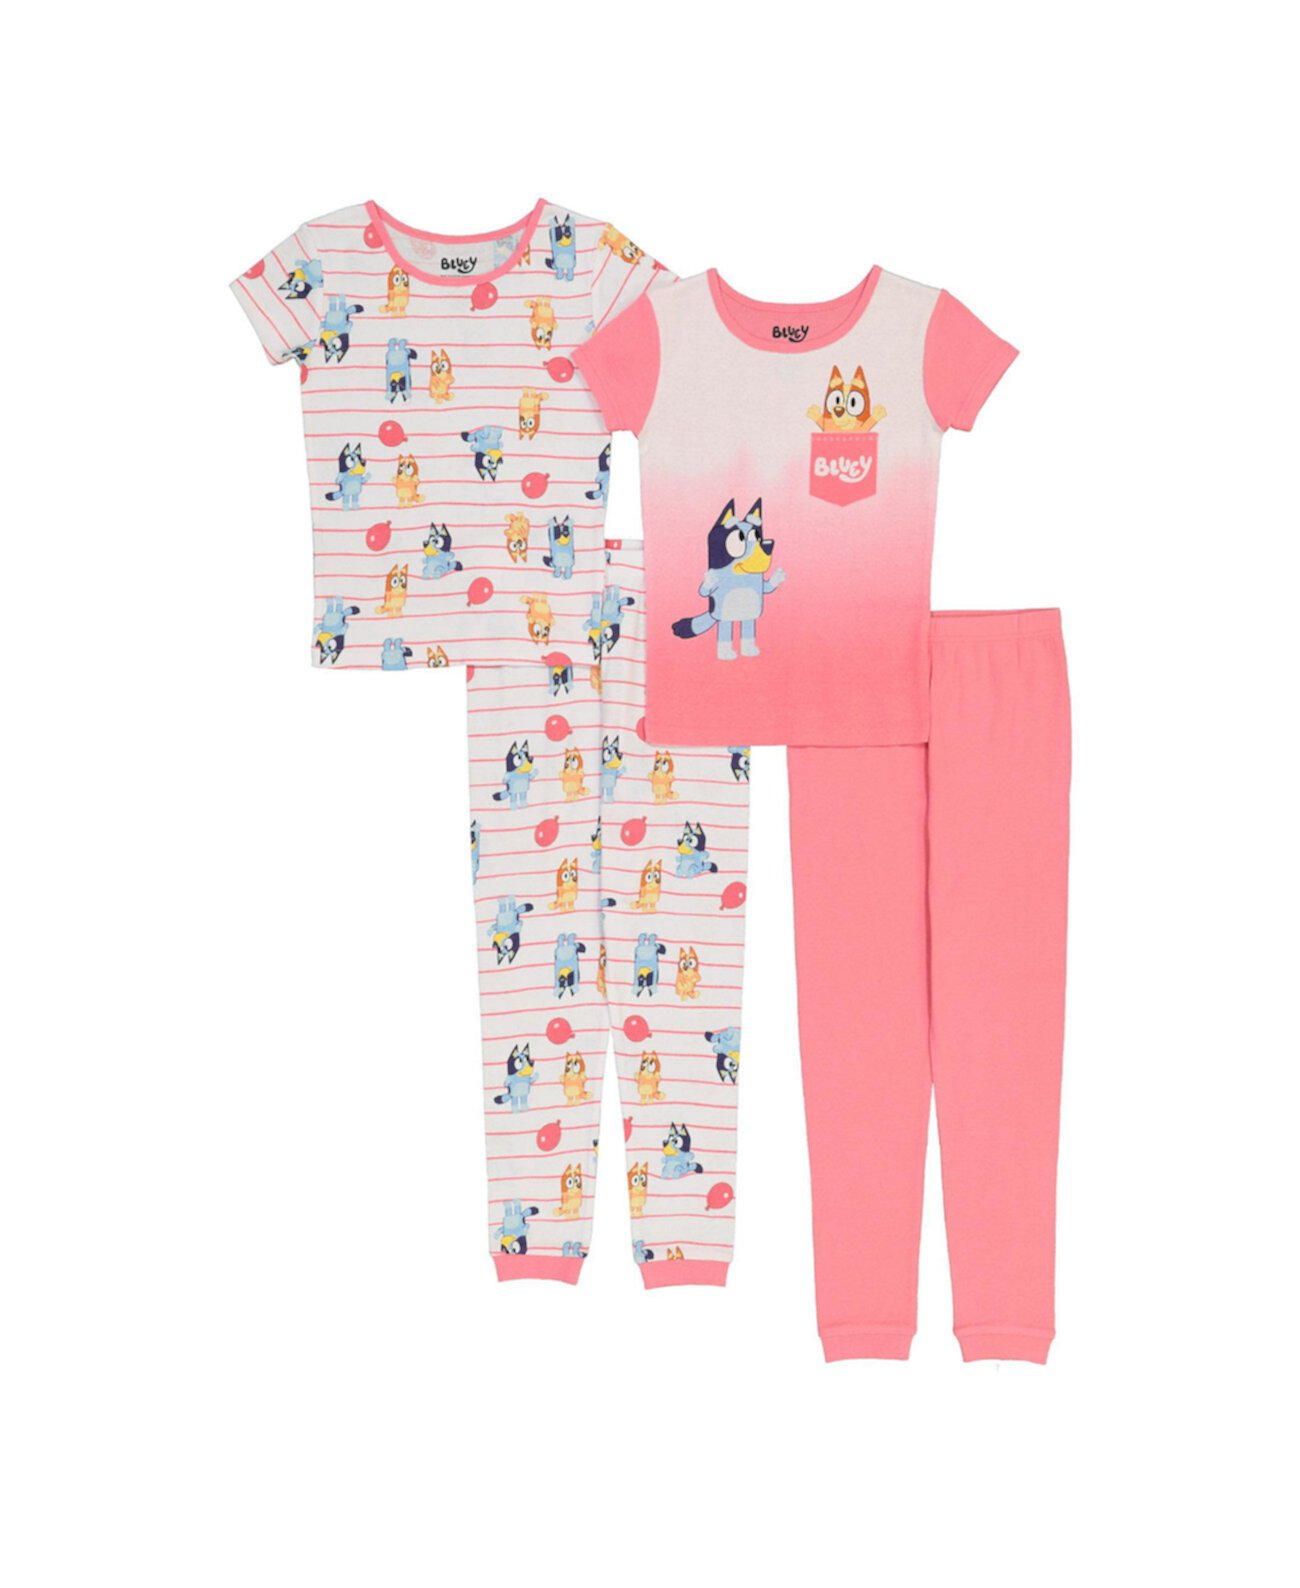 Хлопковая пижама для больших девочек, комплект из 4 предметов Bluey